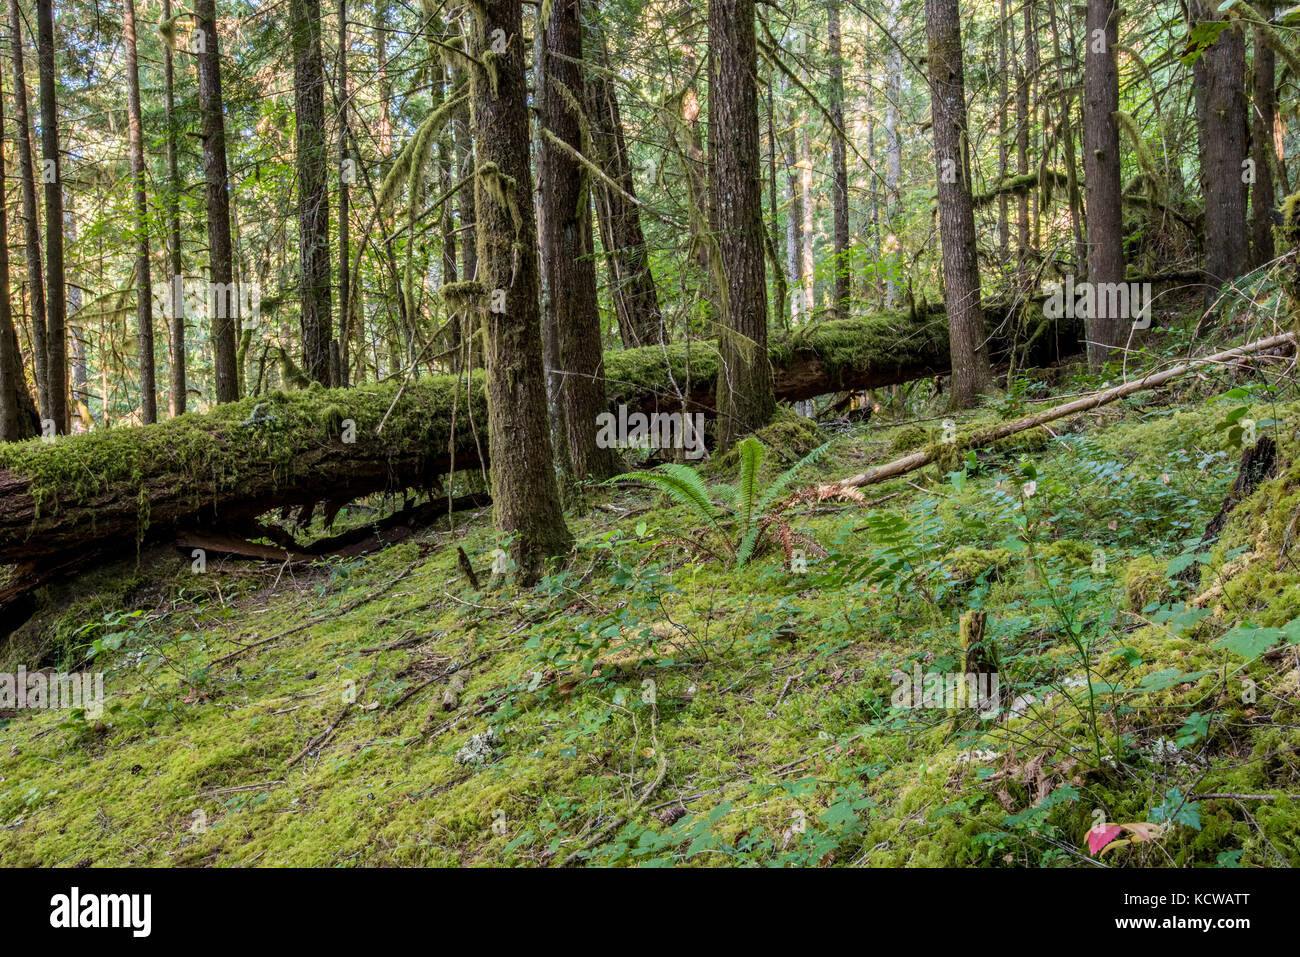 Moss toma el relevo del bosque de Oregon y troncos de árboles caídos Foto de stock